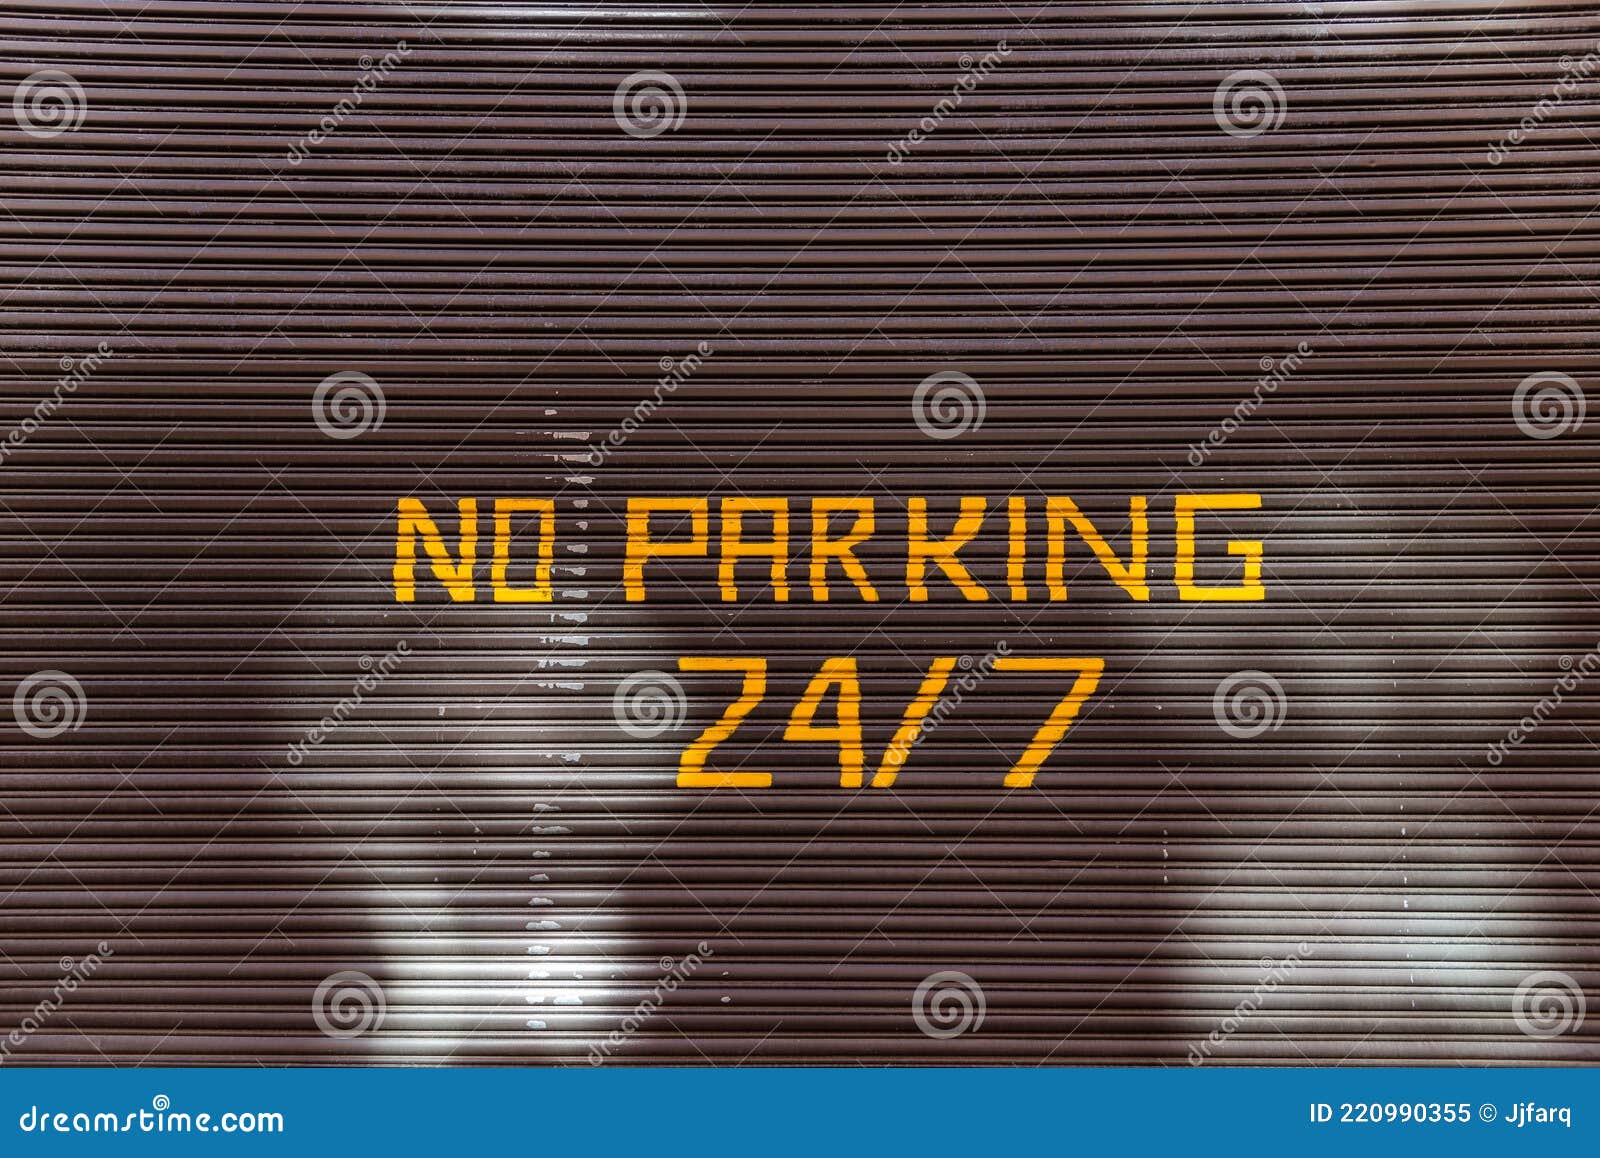 no parking 24, 7 text painted on garaje door